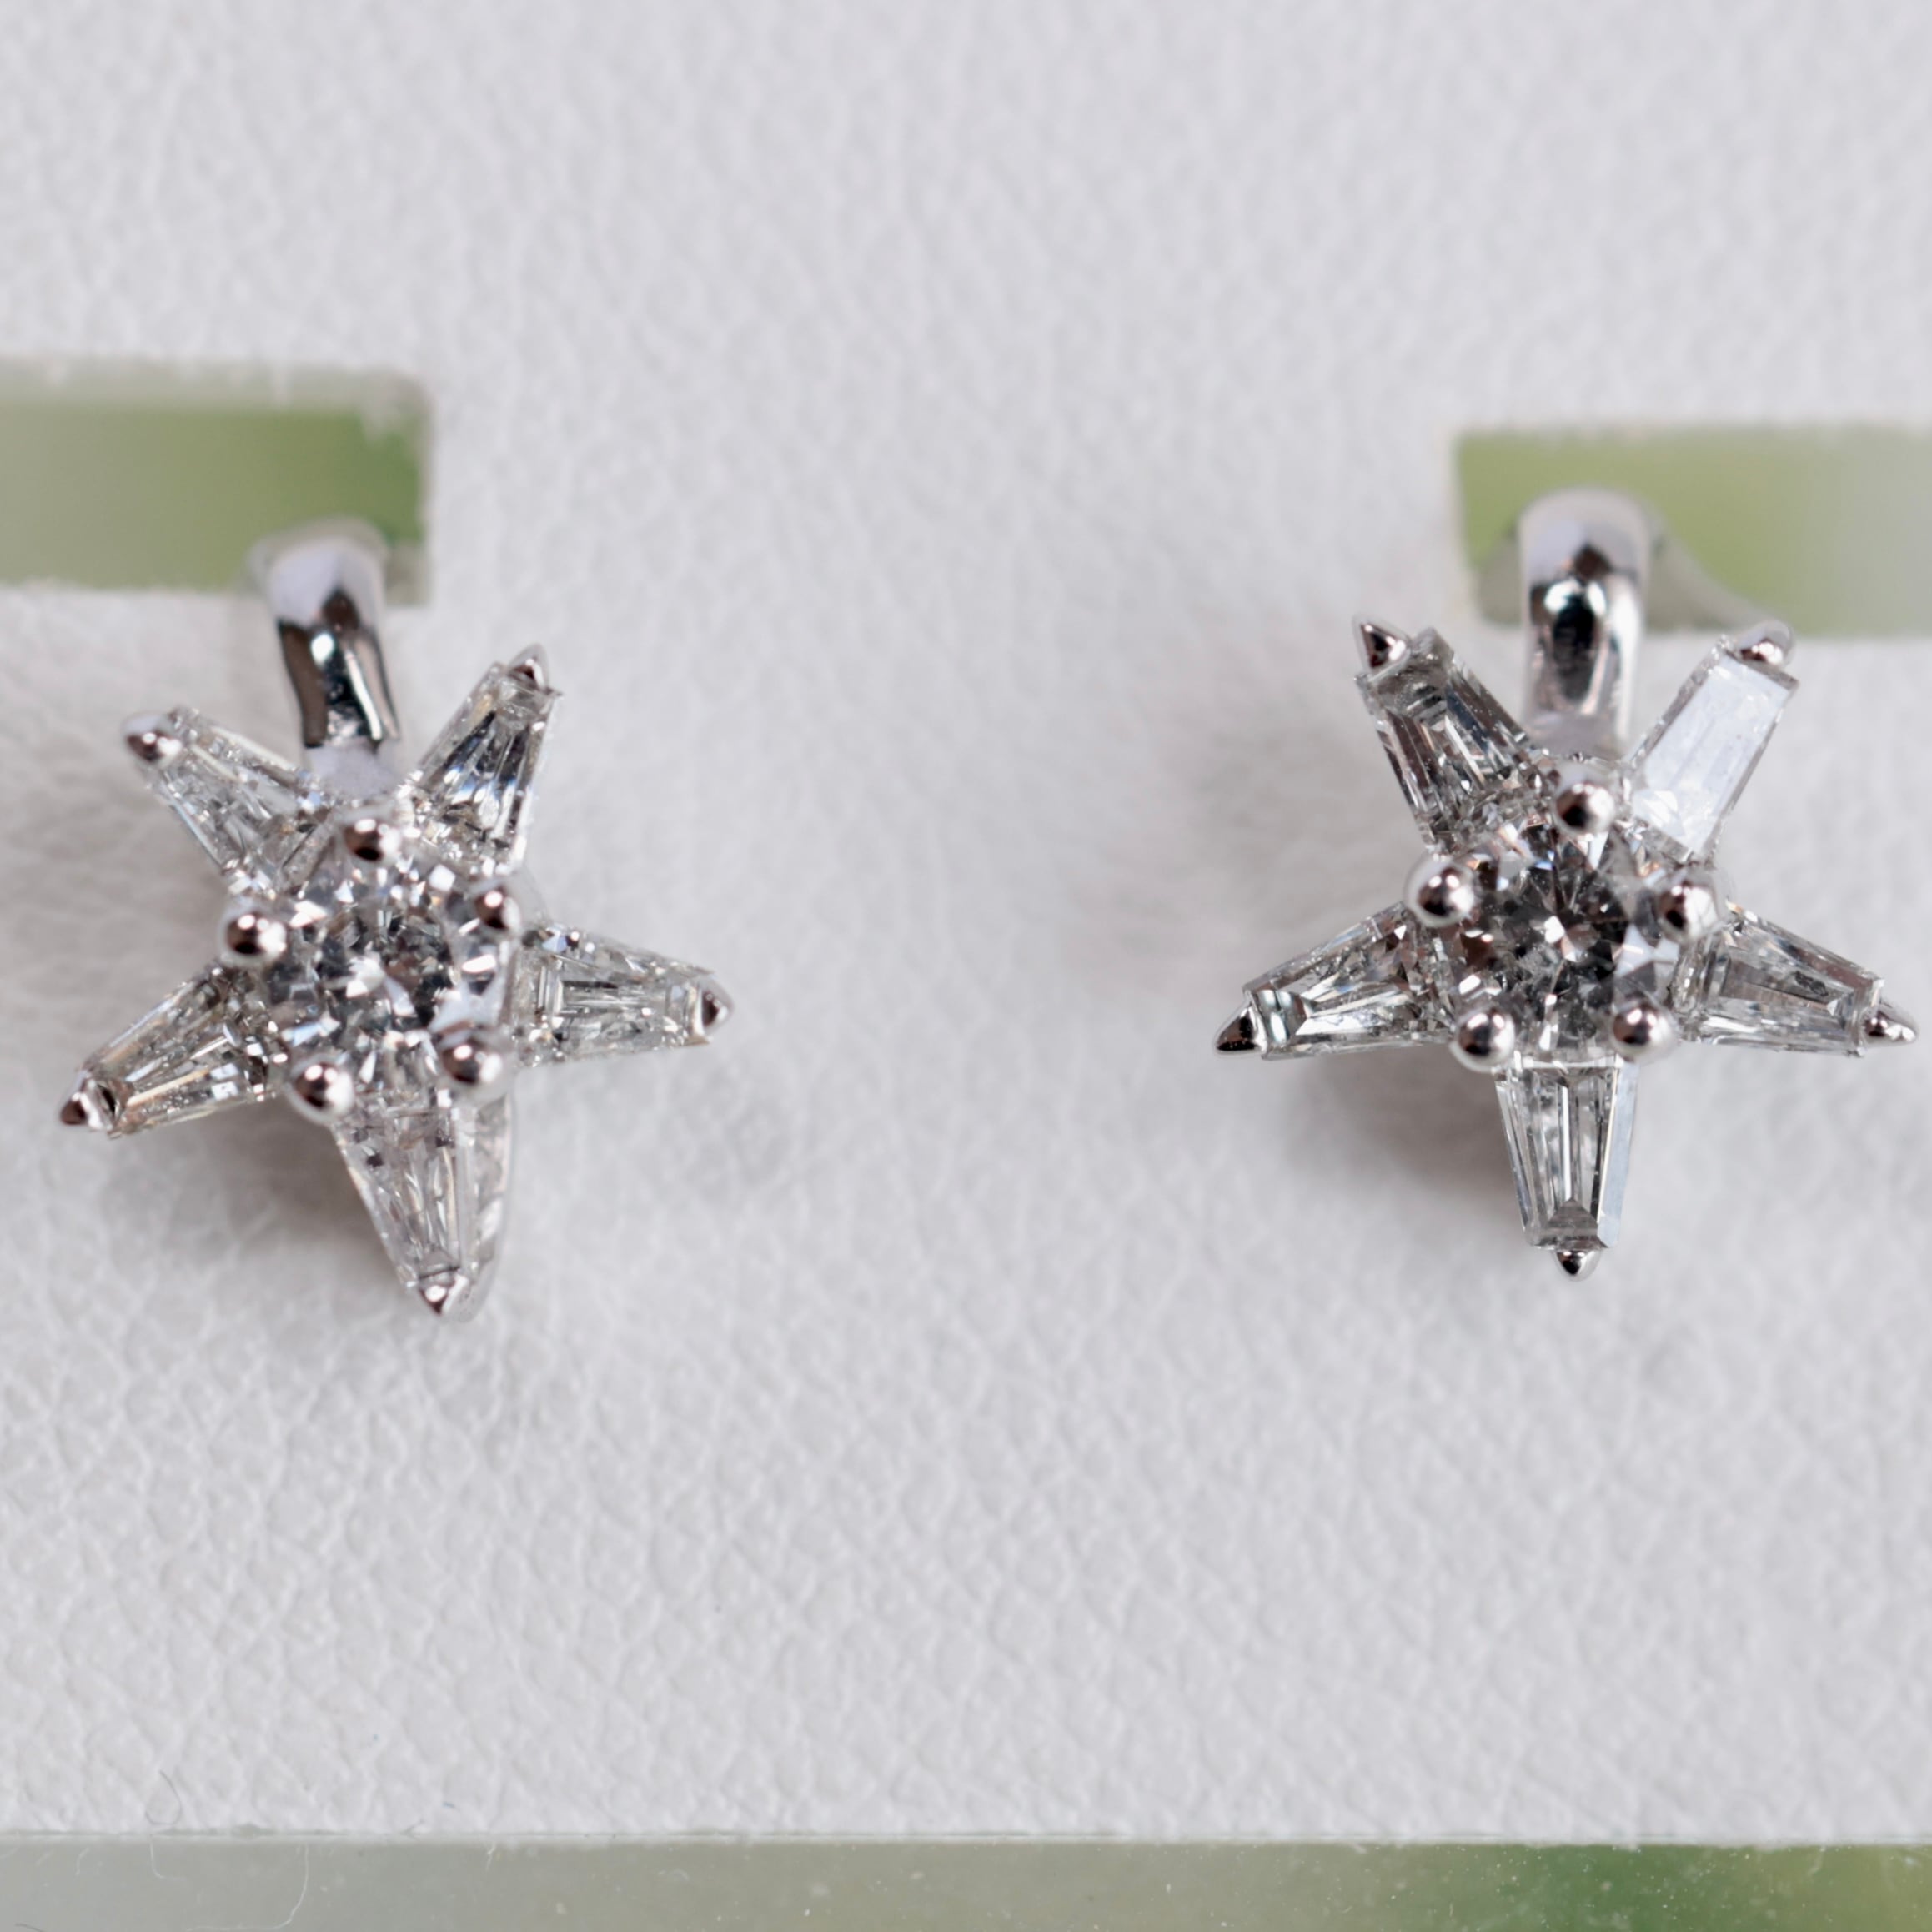 メミコショップ星とダイヤモンドの組み合わせがかわいいネックレス